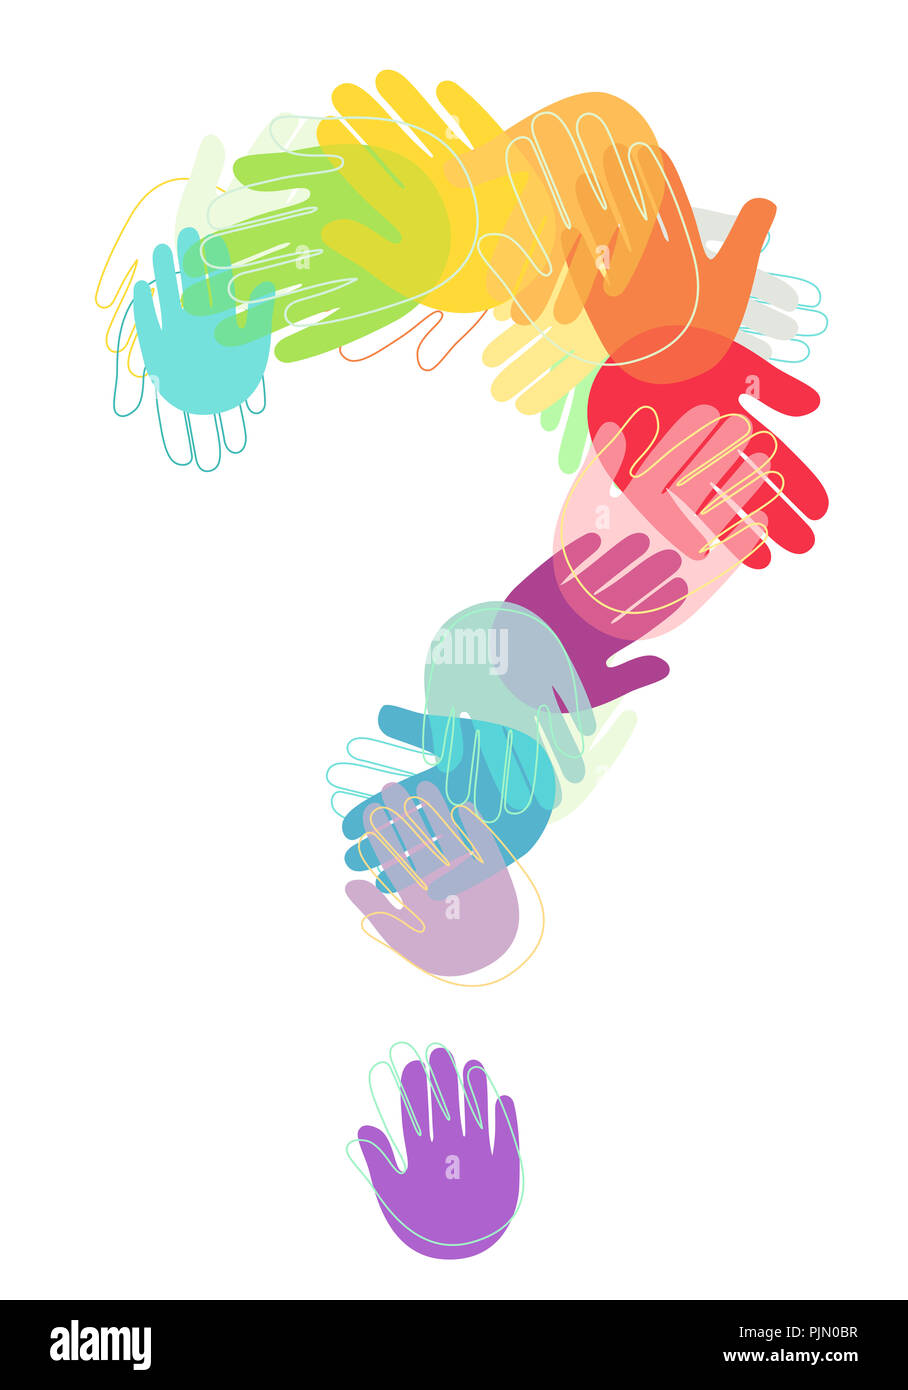 Illustrazione delle mani di bambini in diversi colori che formano un punto interrogativo Foto Stock